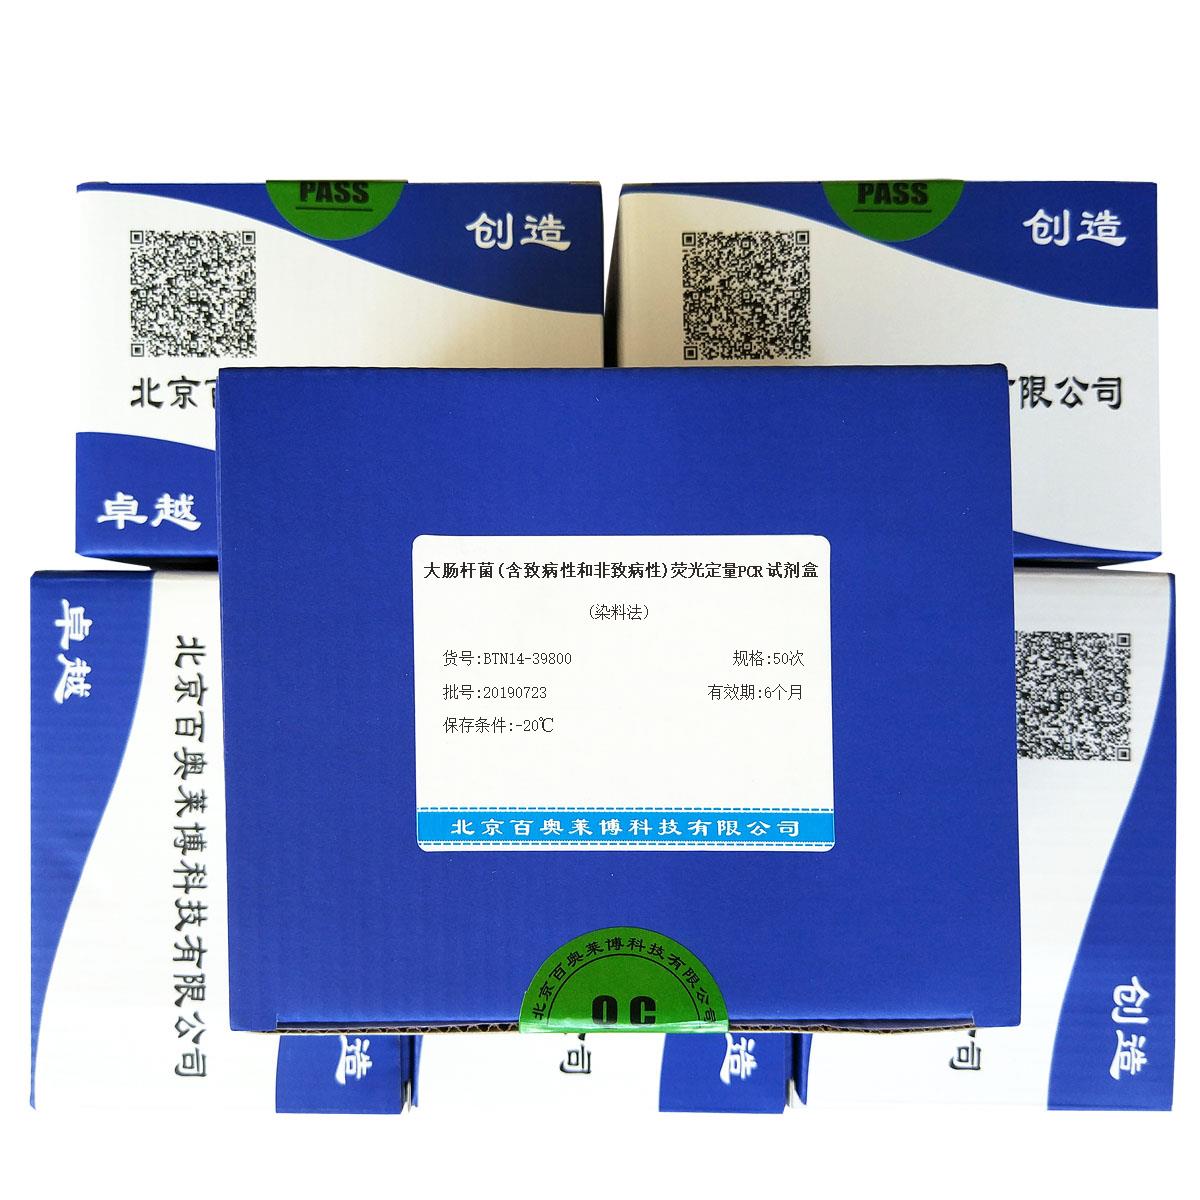 大肠杆菌(含致病性和非致病性)荧光定量PCR试剂盒(染料法)